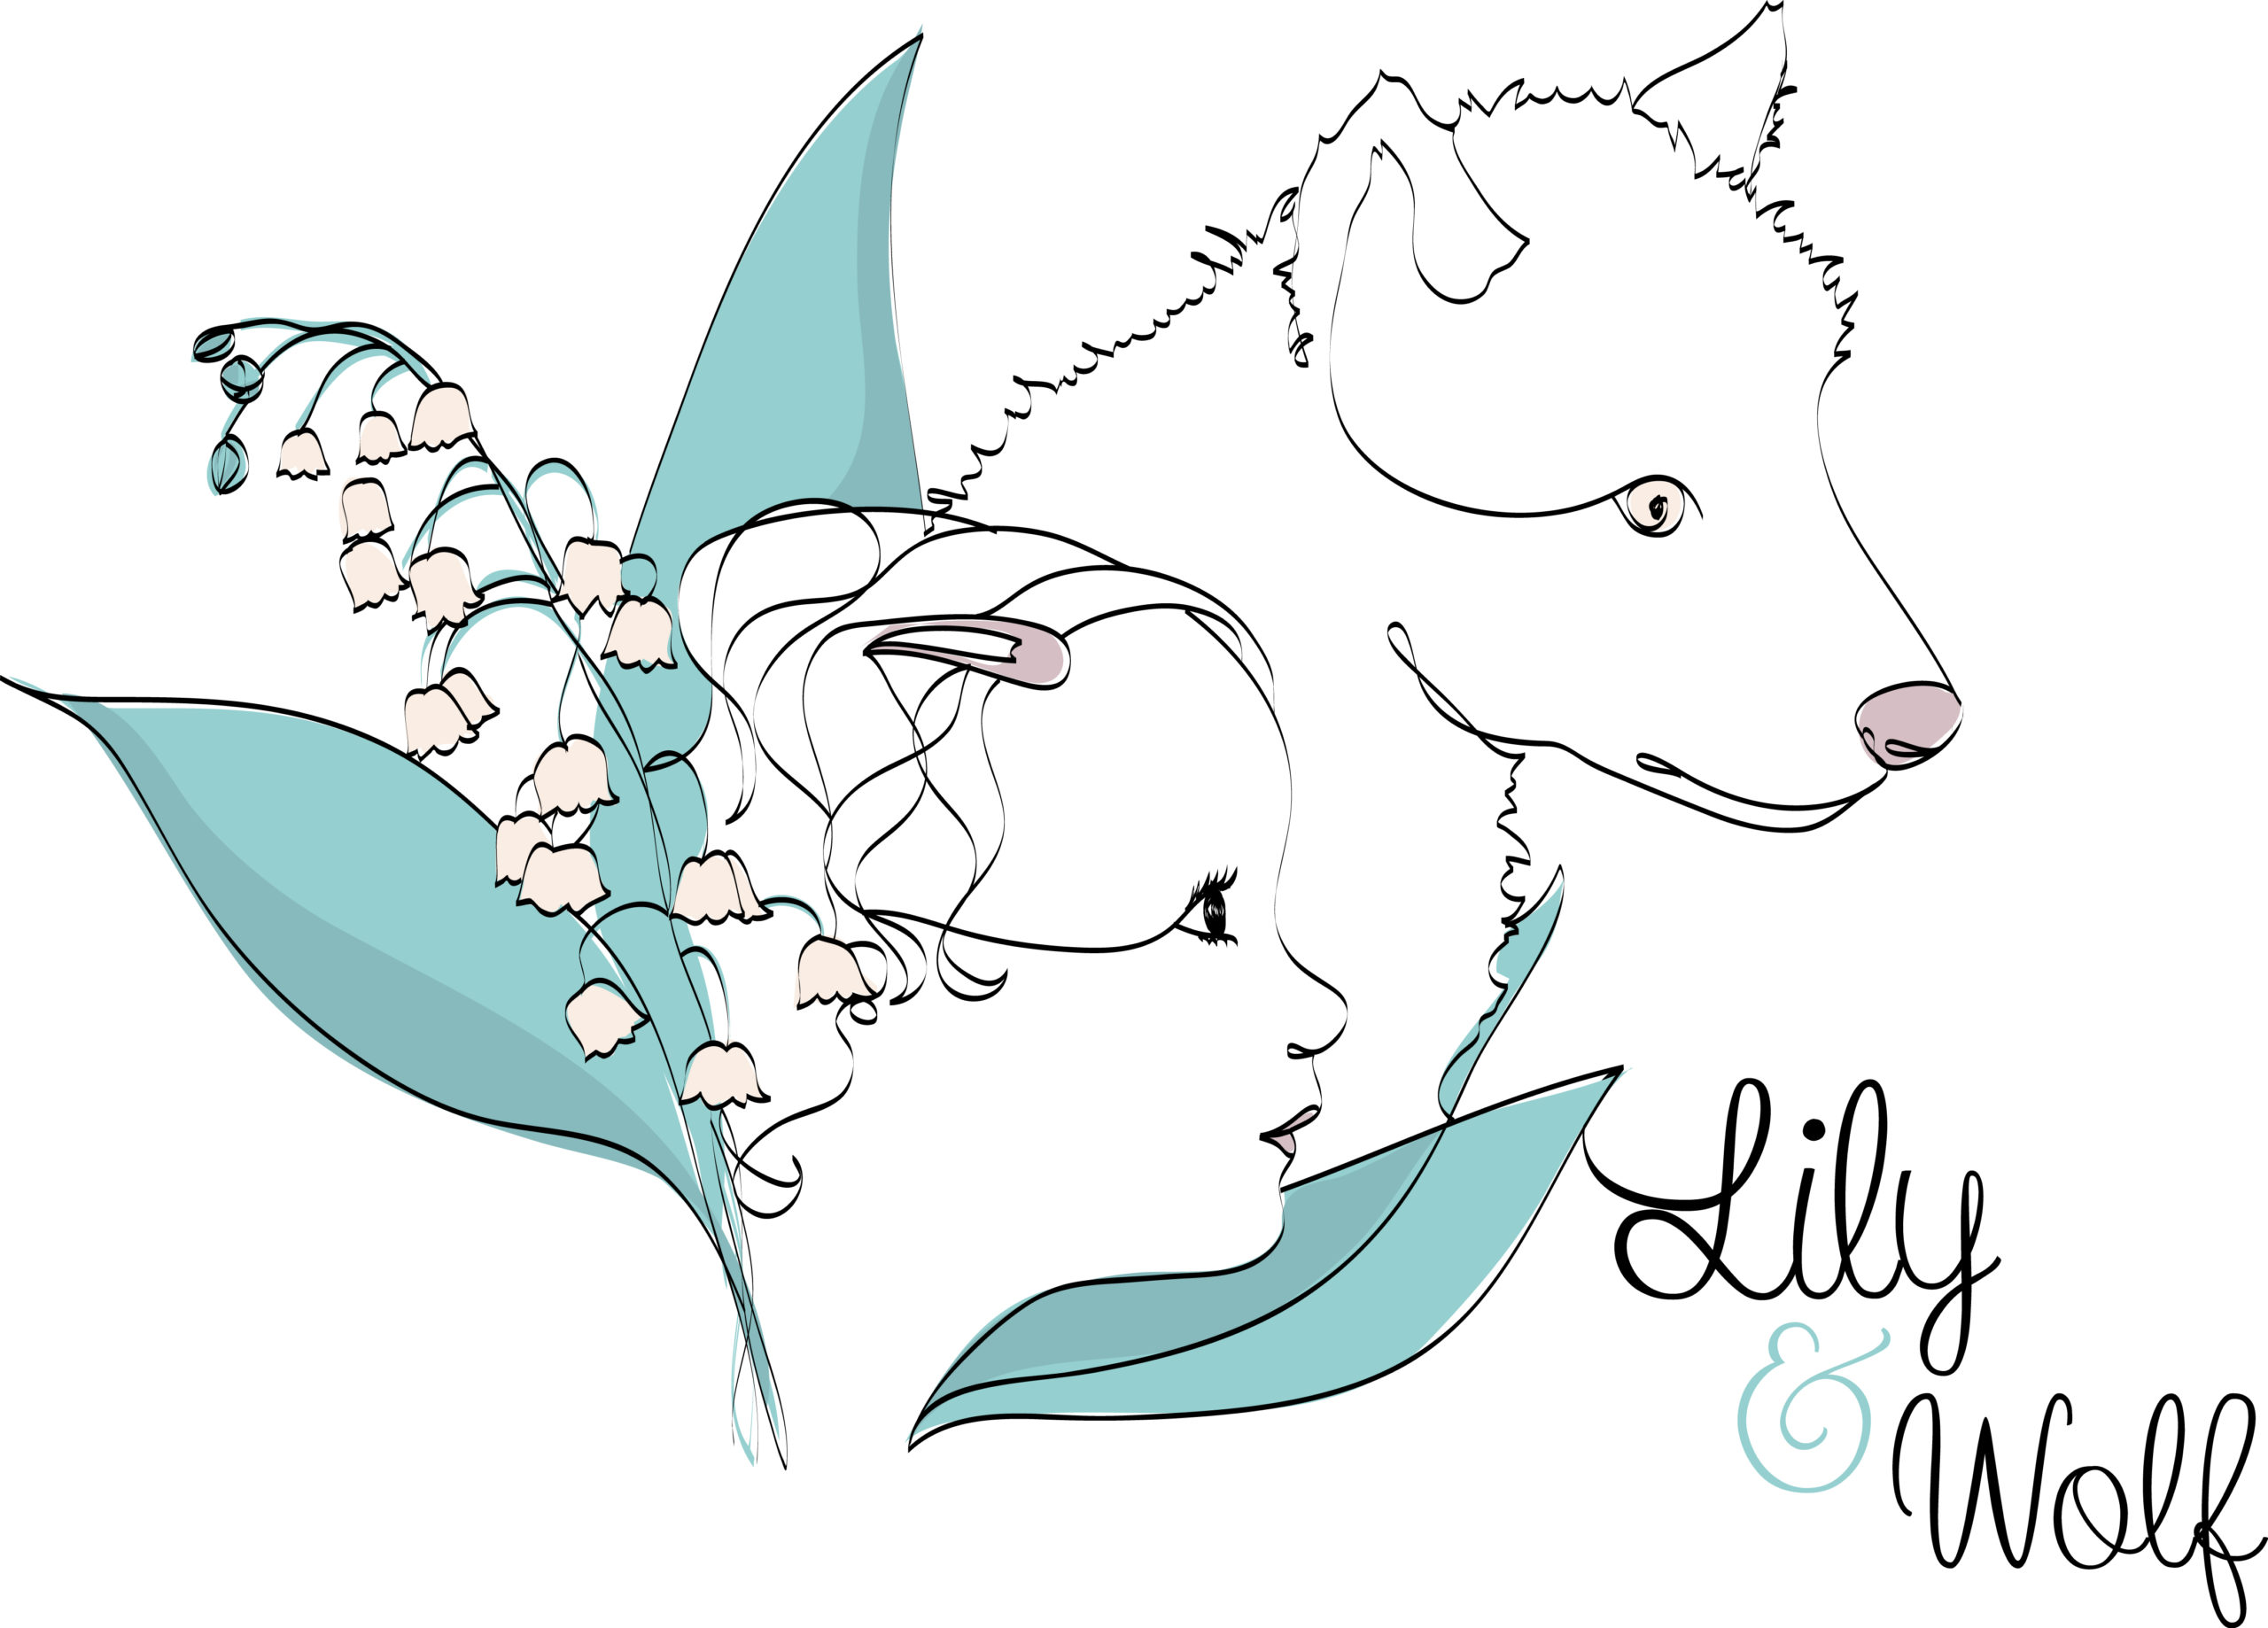 Histoire de crèche n°2 Lily&Wolf